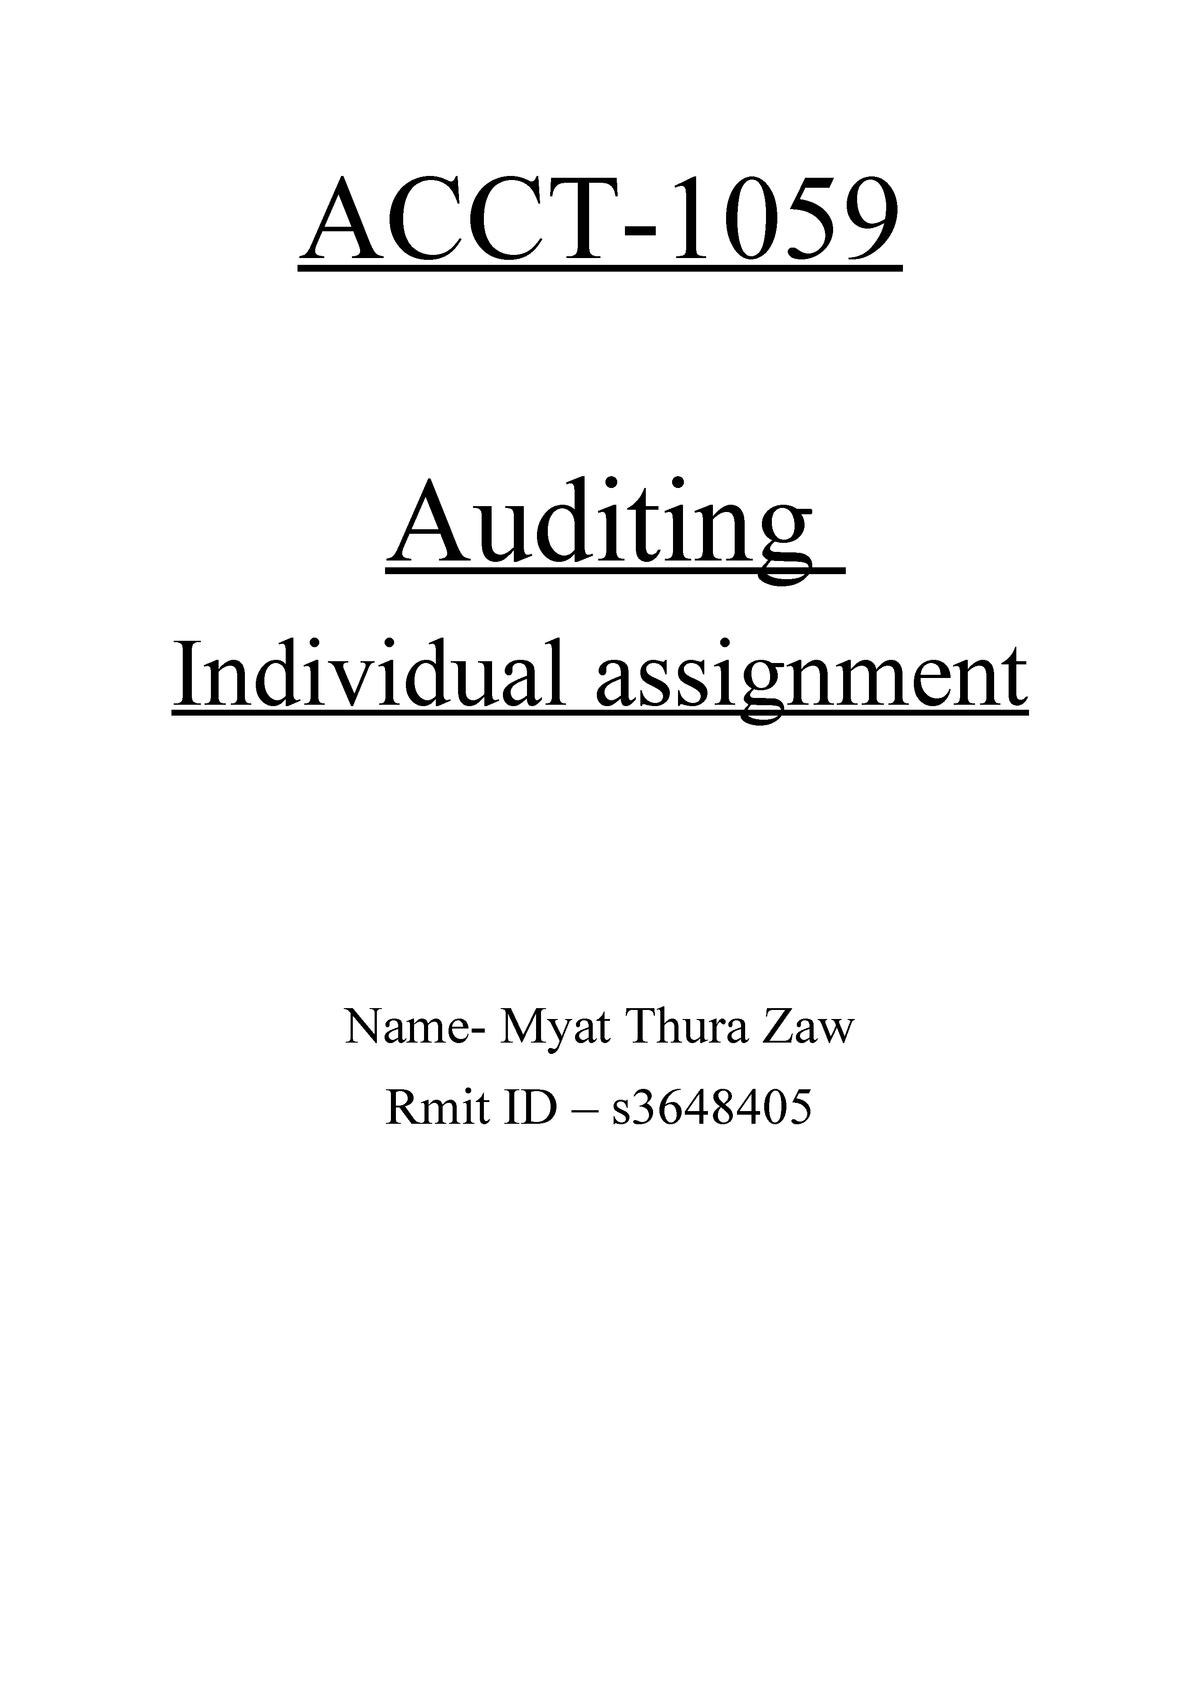 assignment audit your understanding 8 2 (practice)